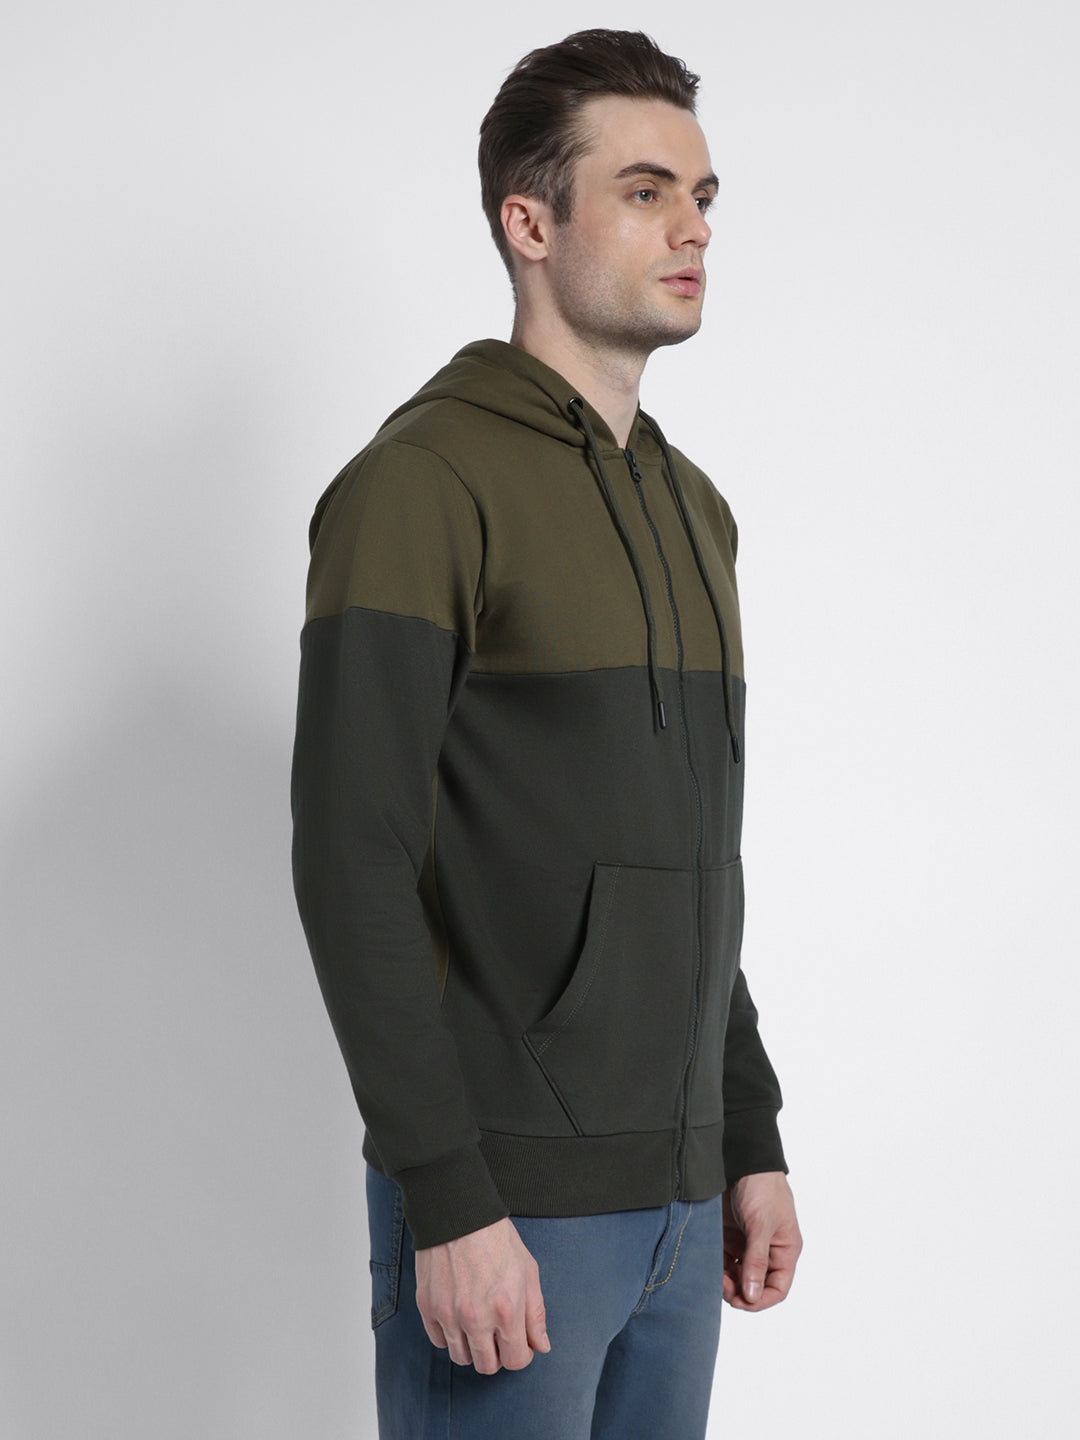 Dennis Lingo Men's Olive  Full Sleeves zipper hoodie Sweatshirt